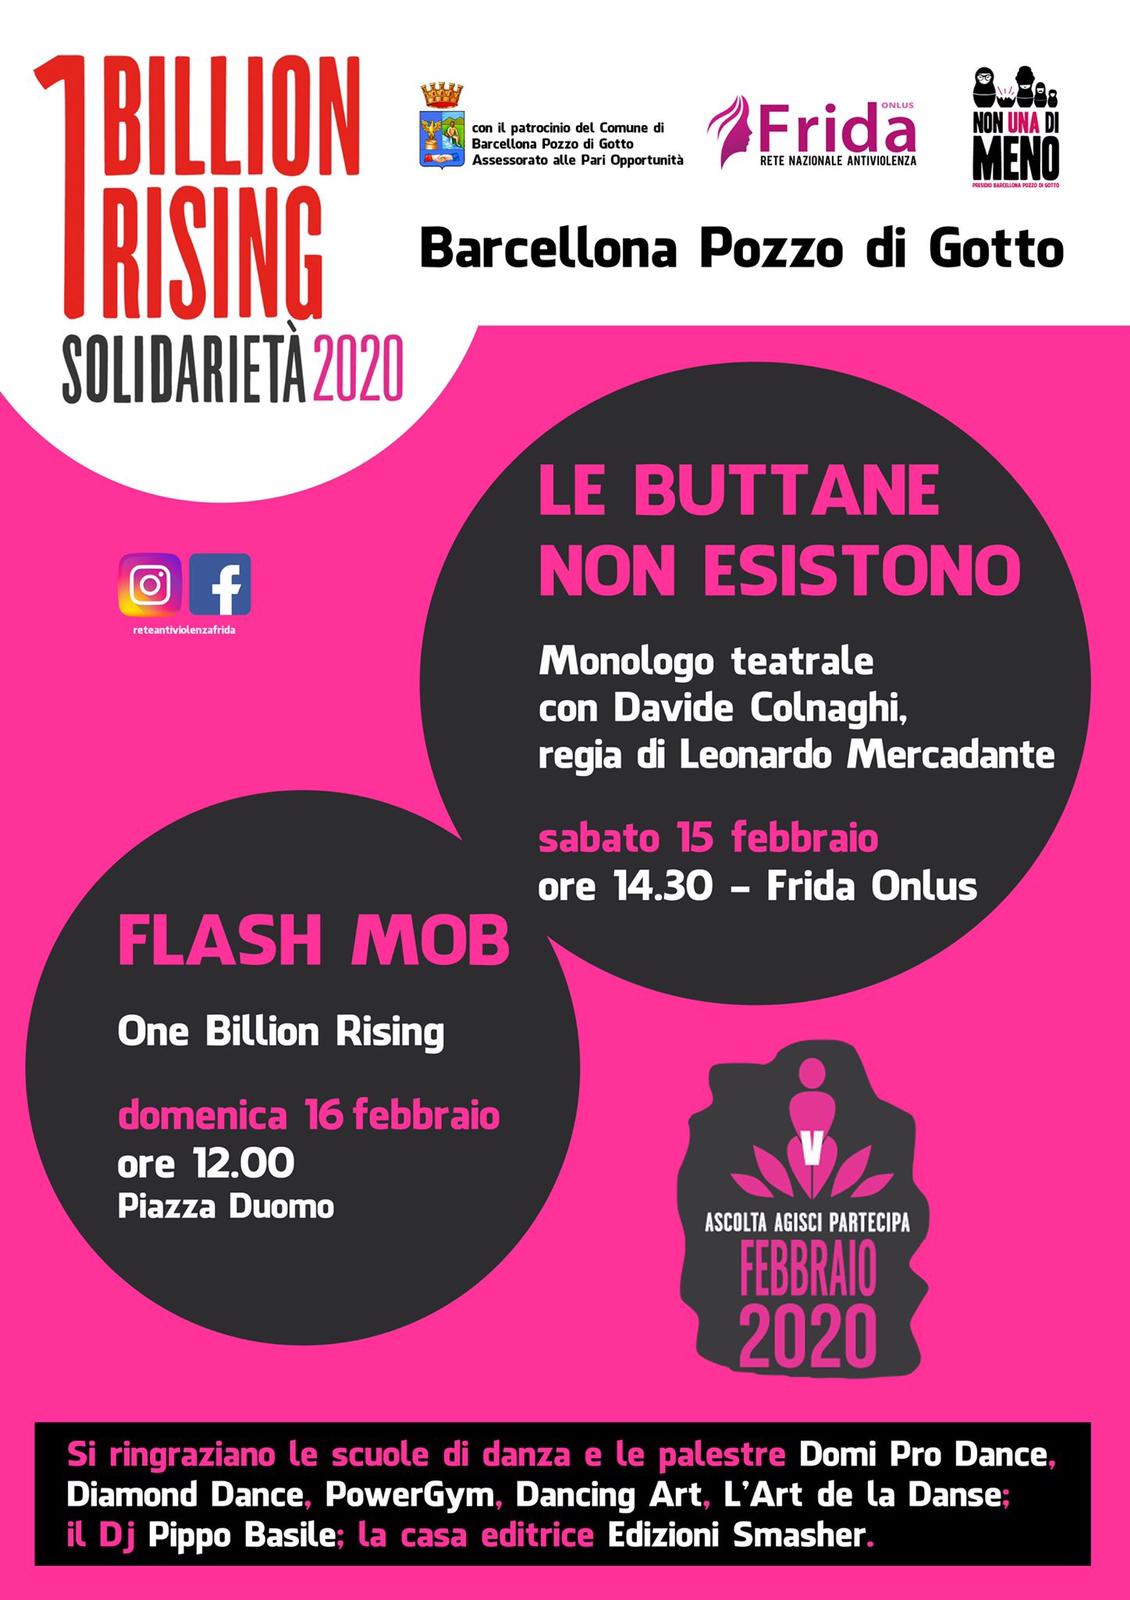 One Billion Rising a Barcellona Pozzo di Gotto